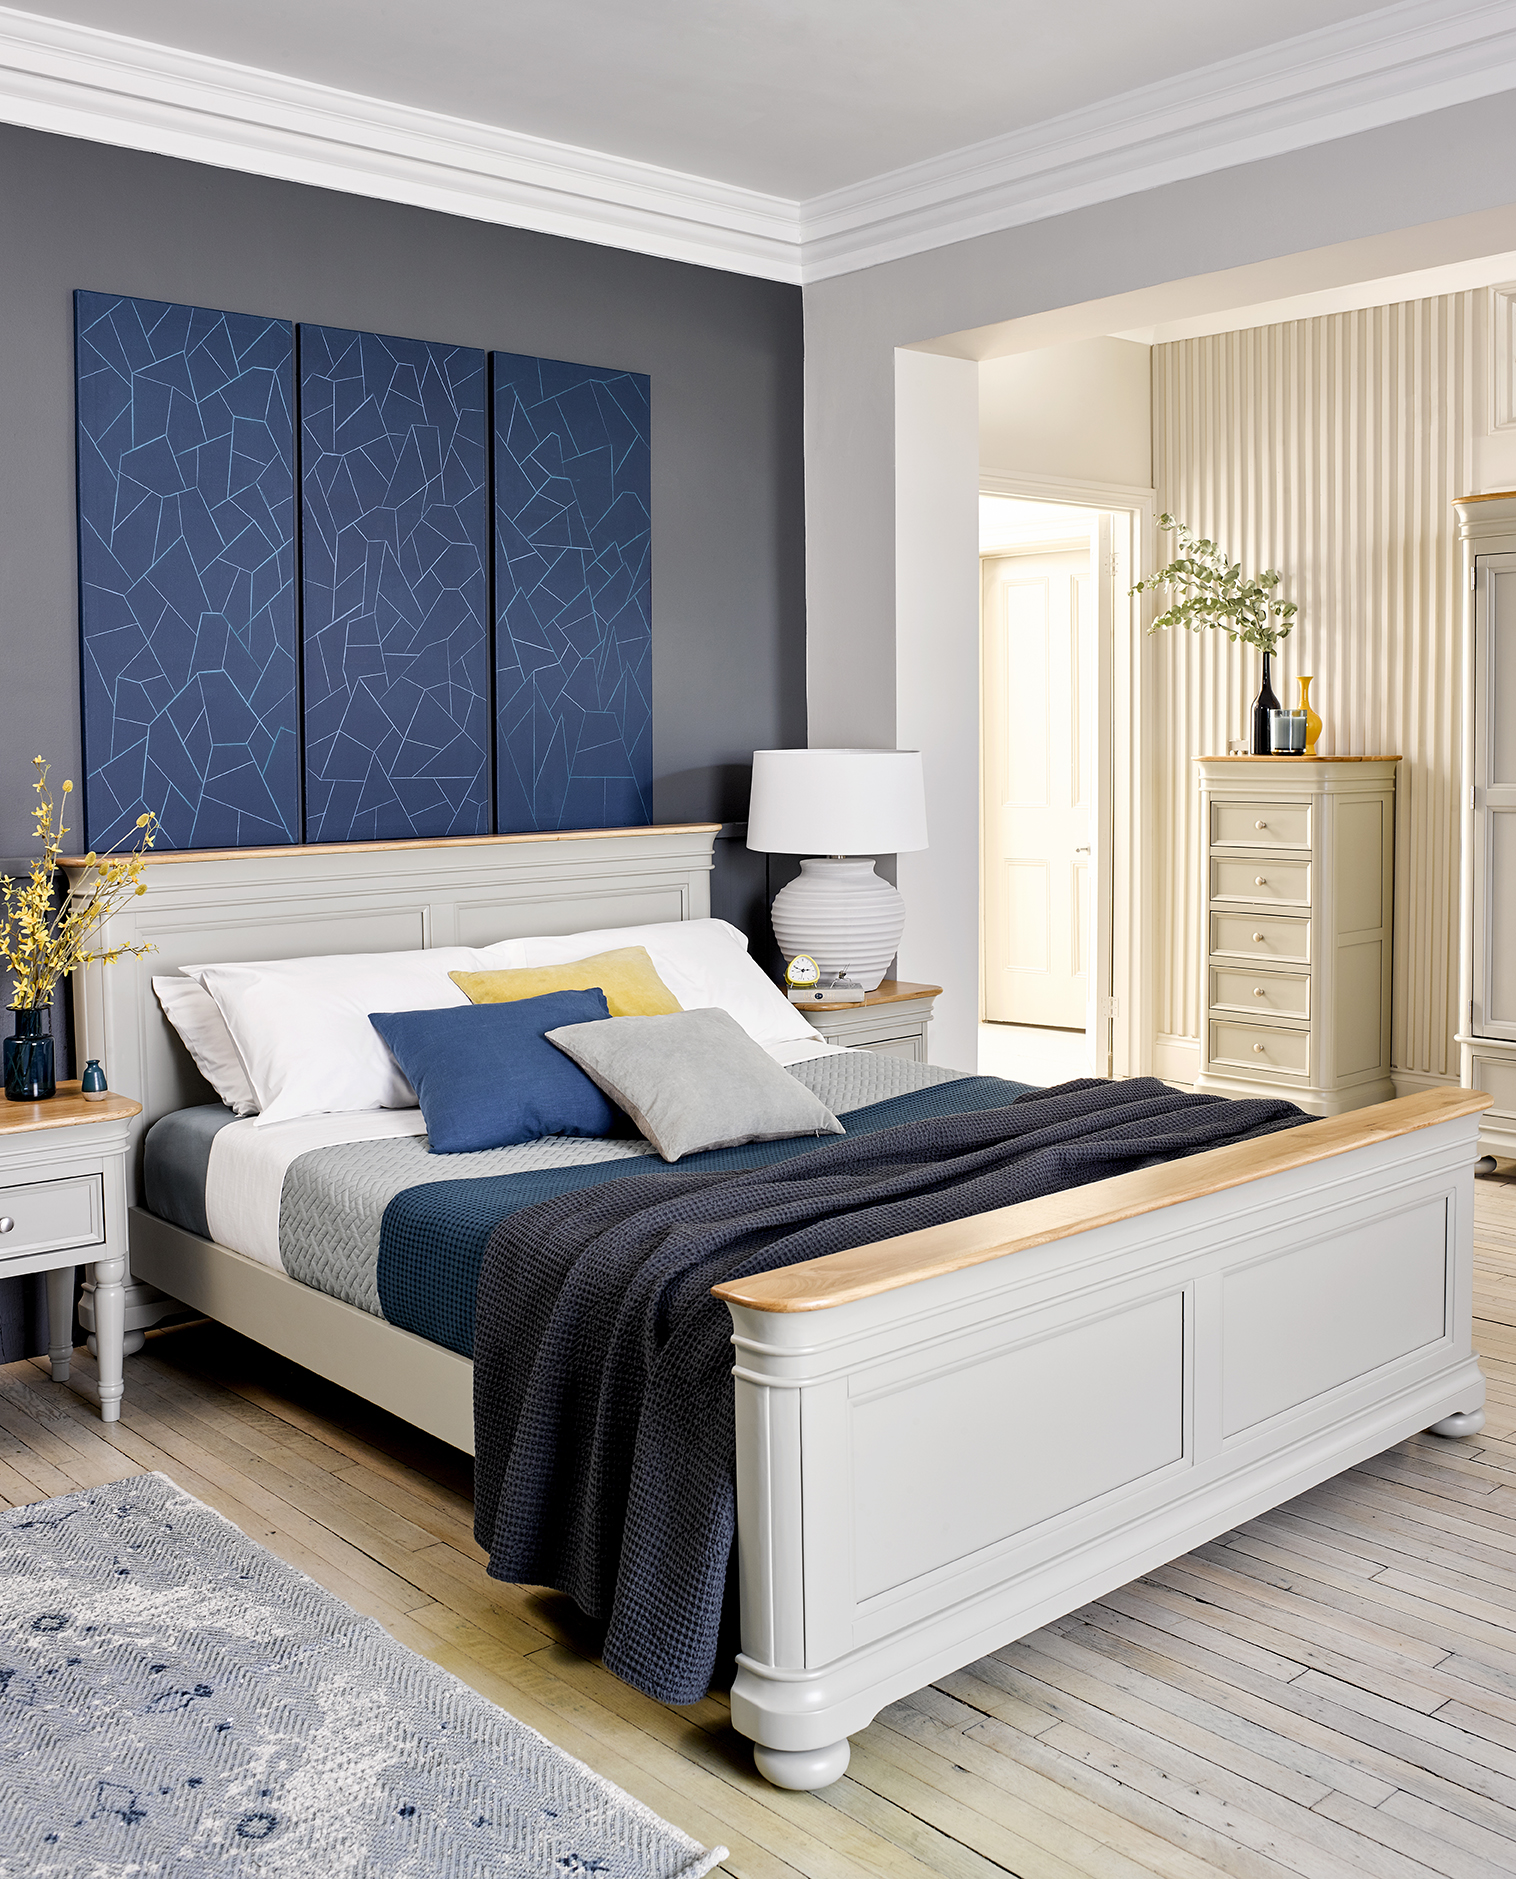 Painted bedroom furniture Oak Furnitureland Brindle collection